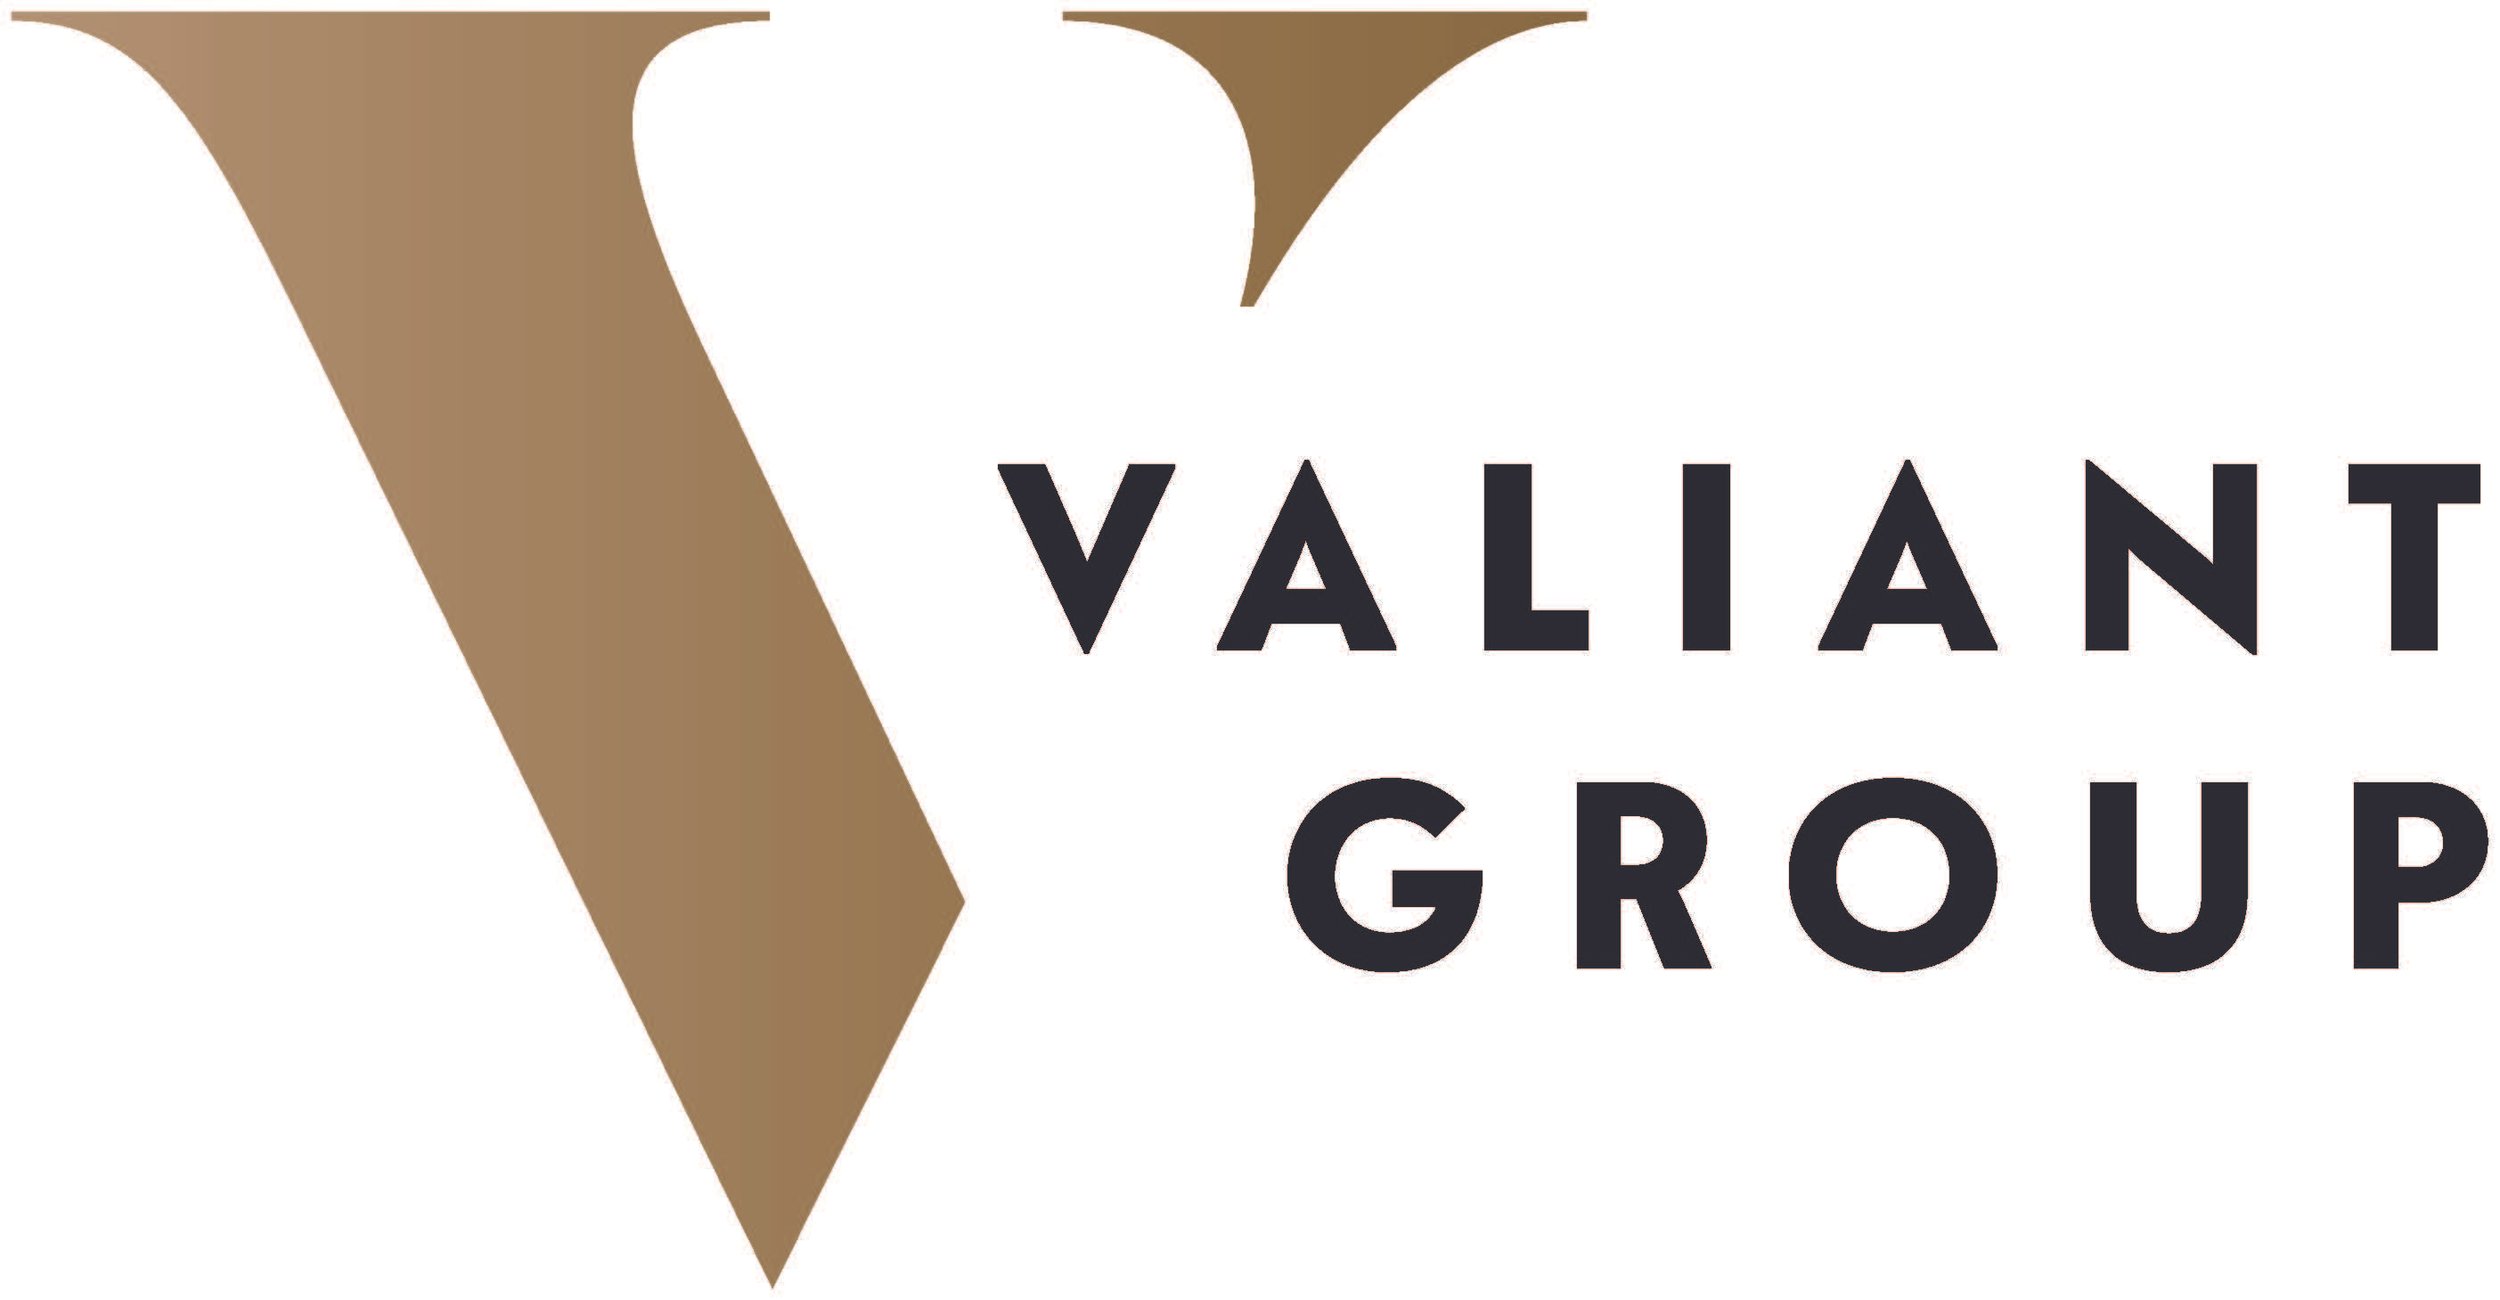 ValiantGroup logo.jpg